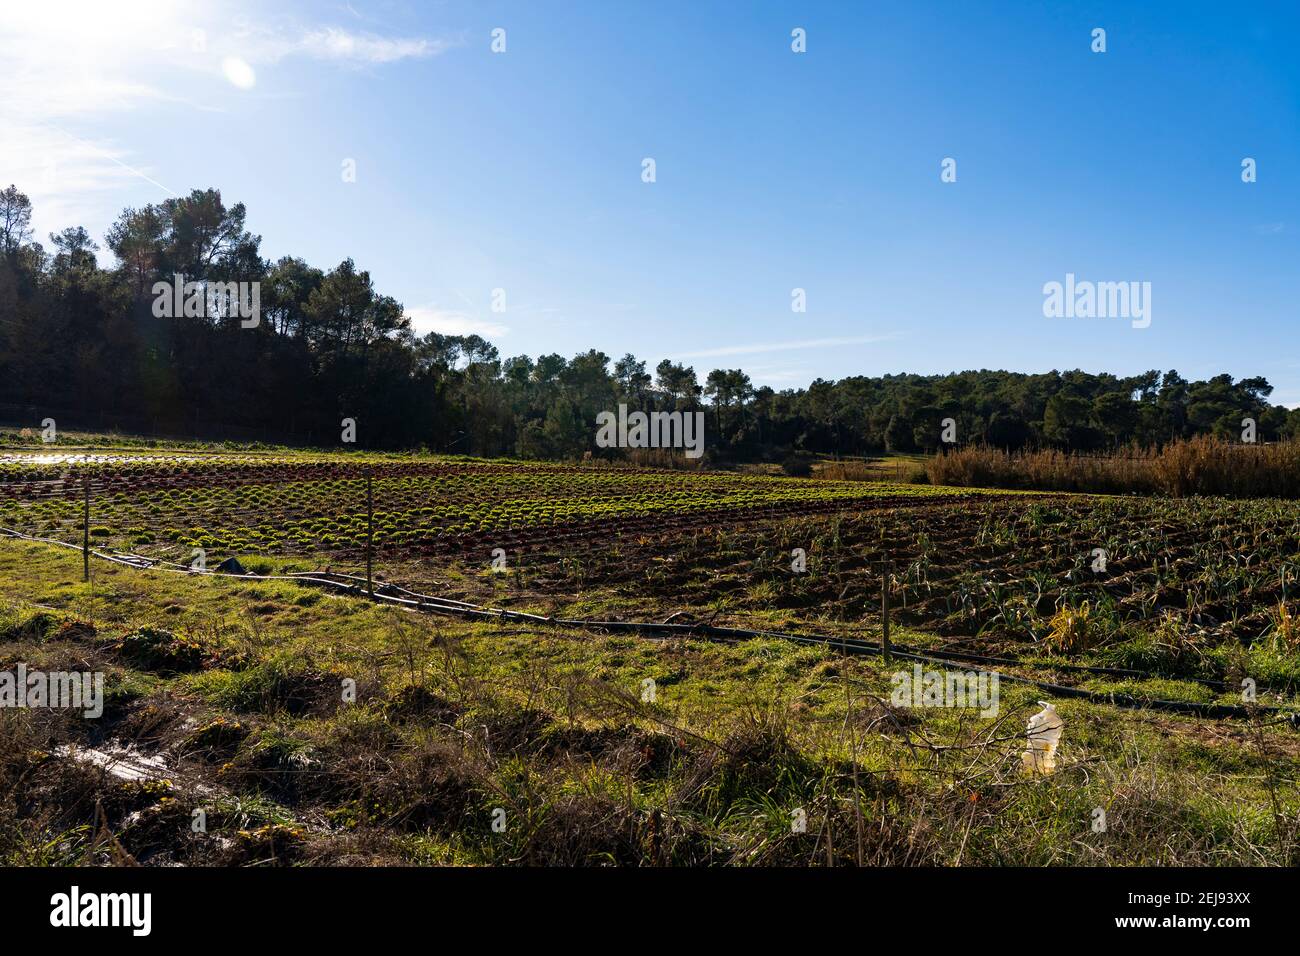 La Rural, producteurs de fruits et légumes biologiques à Sant Cugat del Valles, Barcelone. La Rural, productors de fruites i hortalisses ecològiques a Sant Cu Banque D'Images